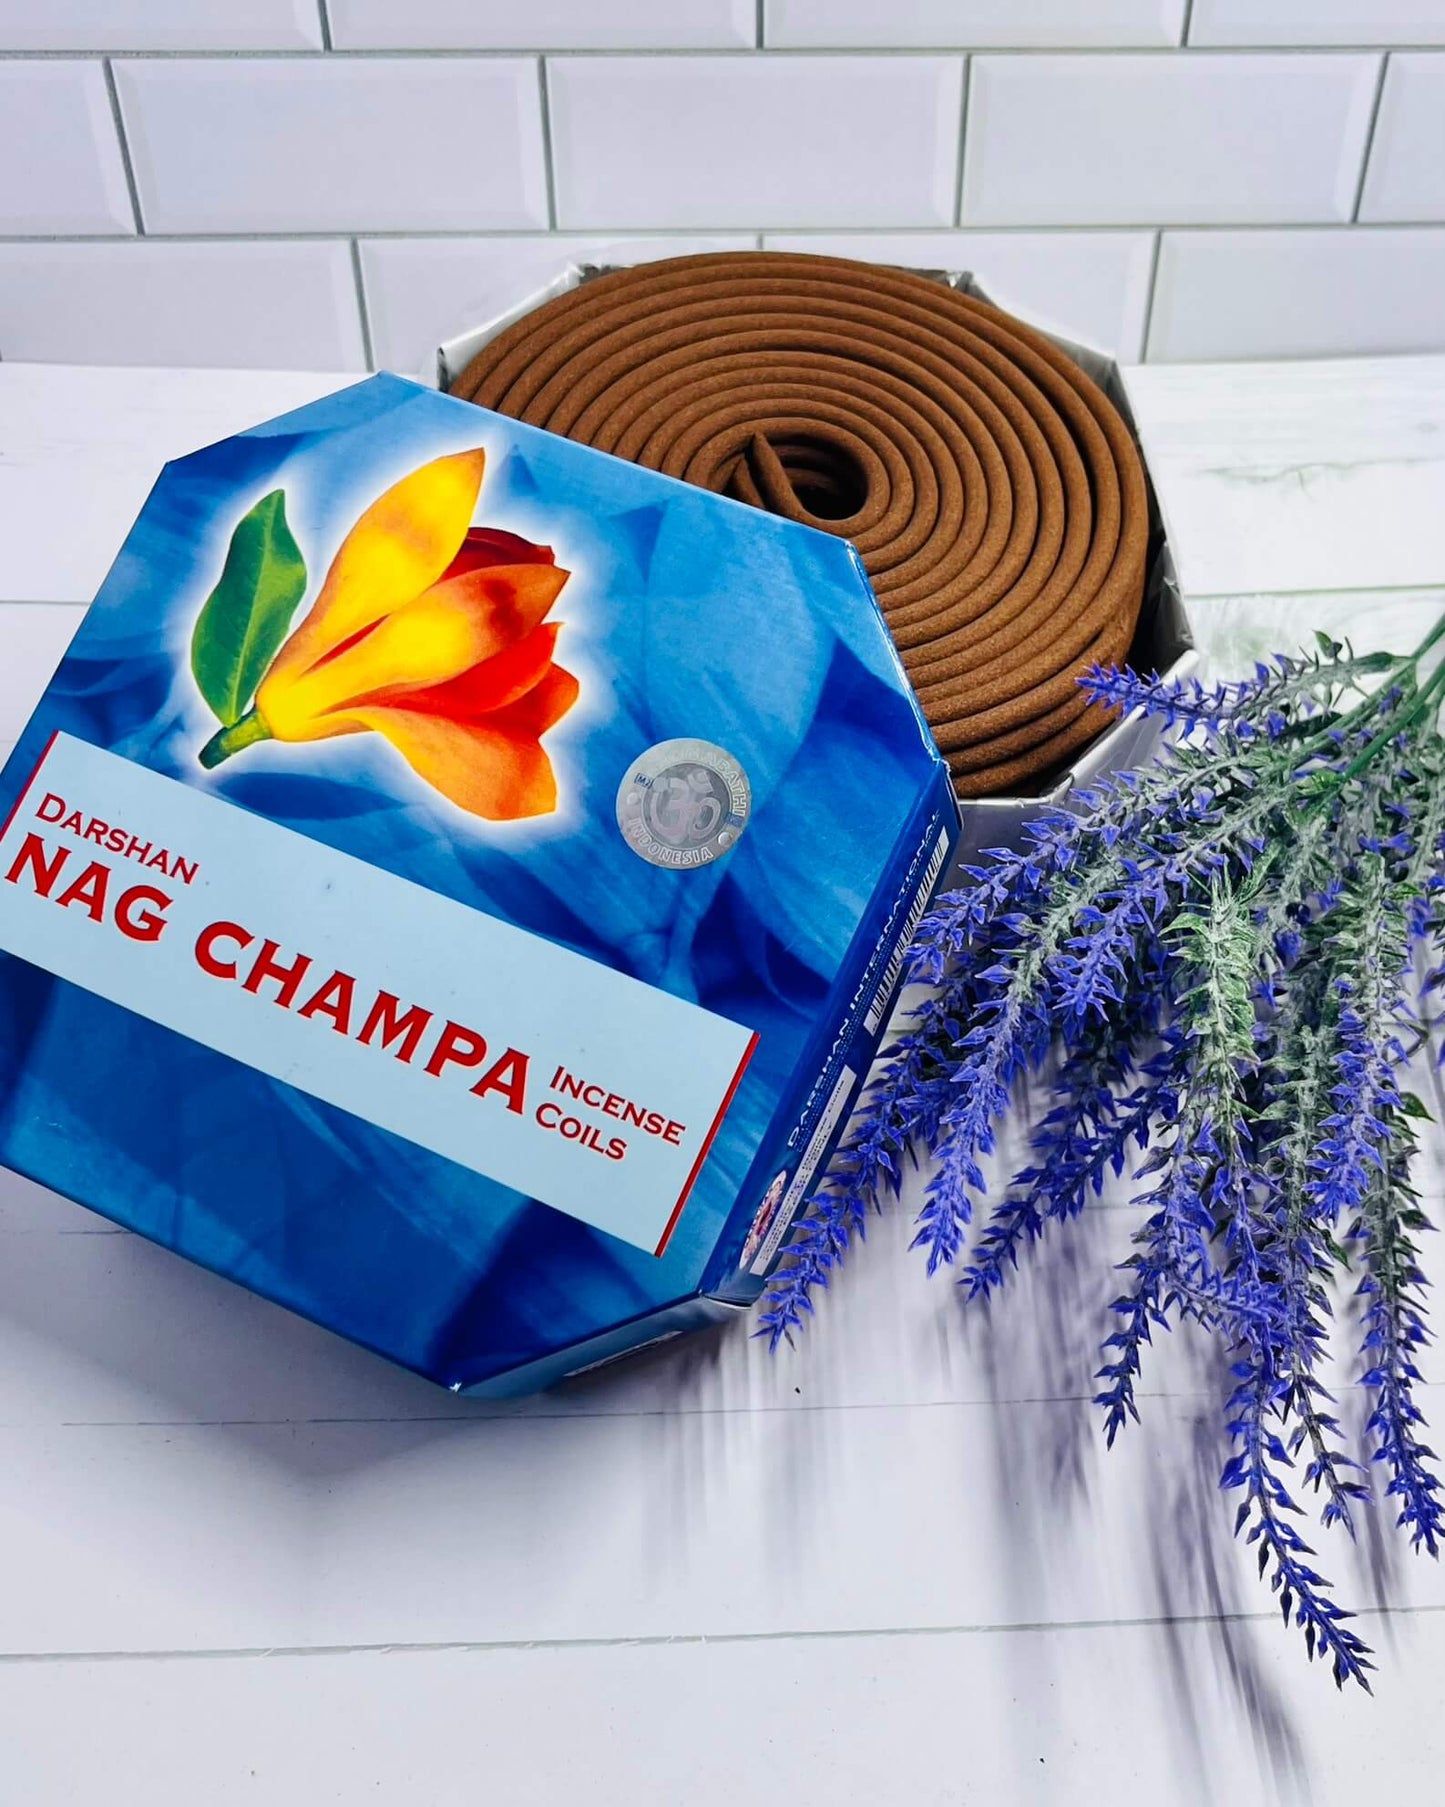 Darshan Nag Champa Incense Coil